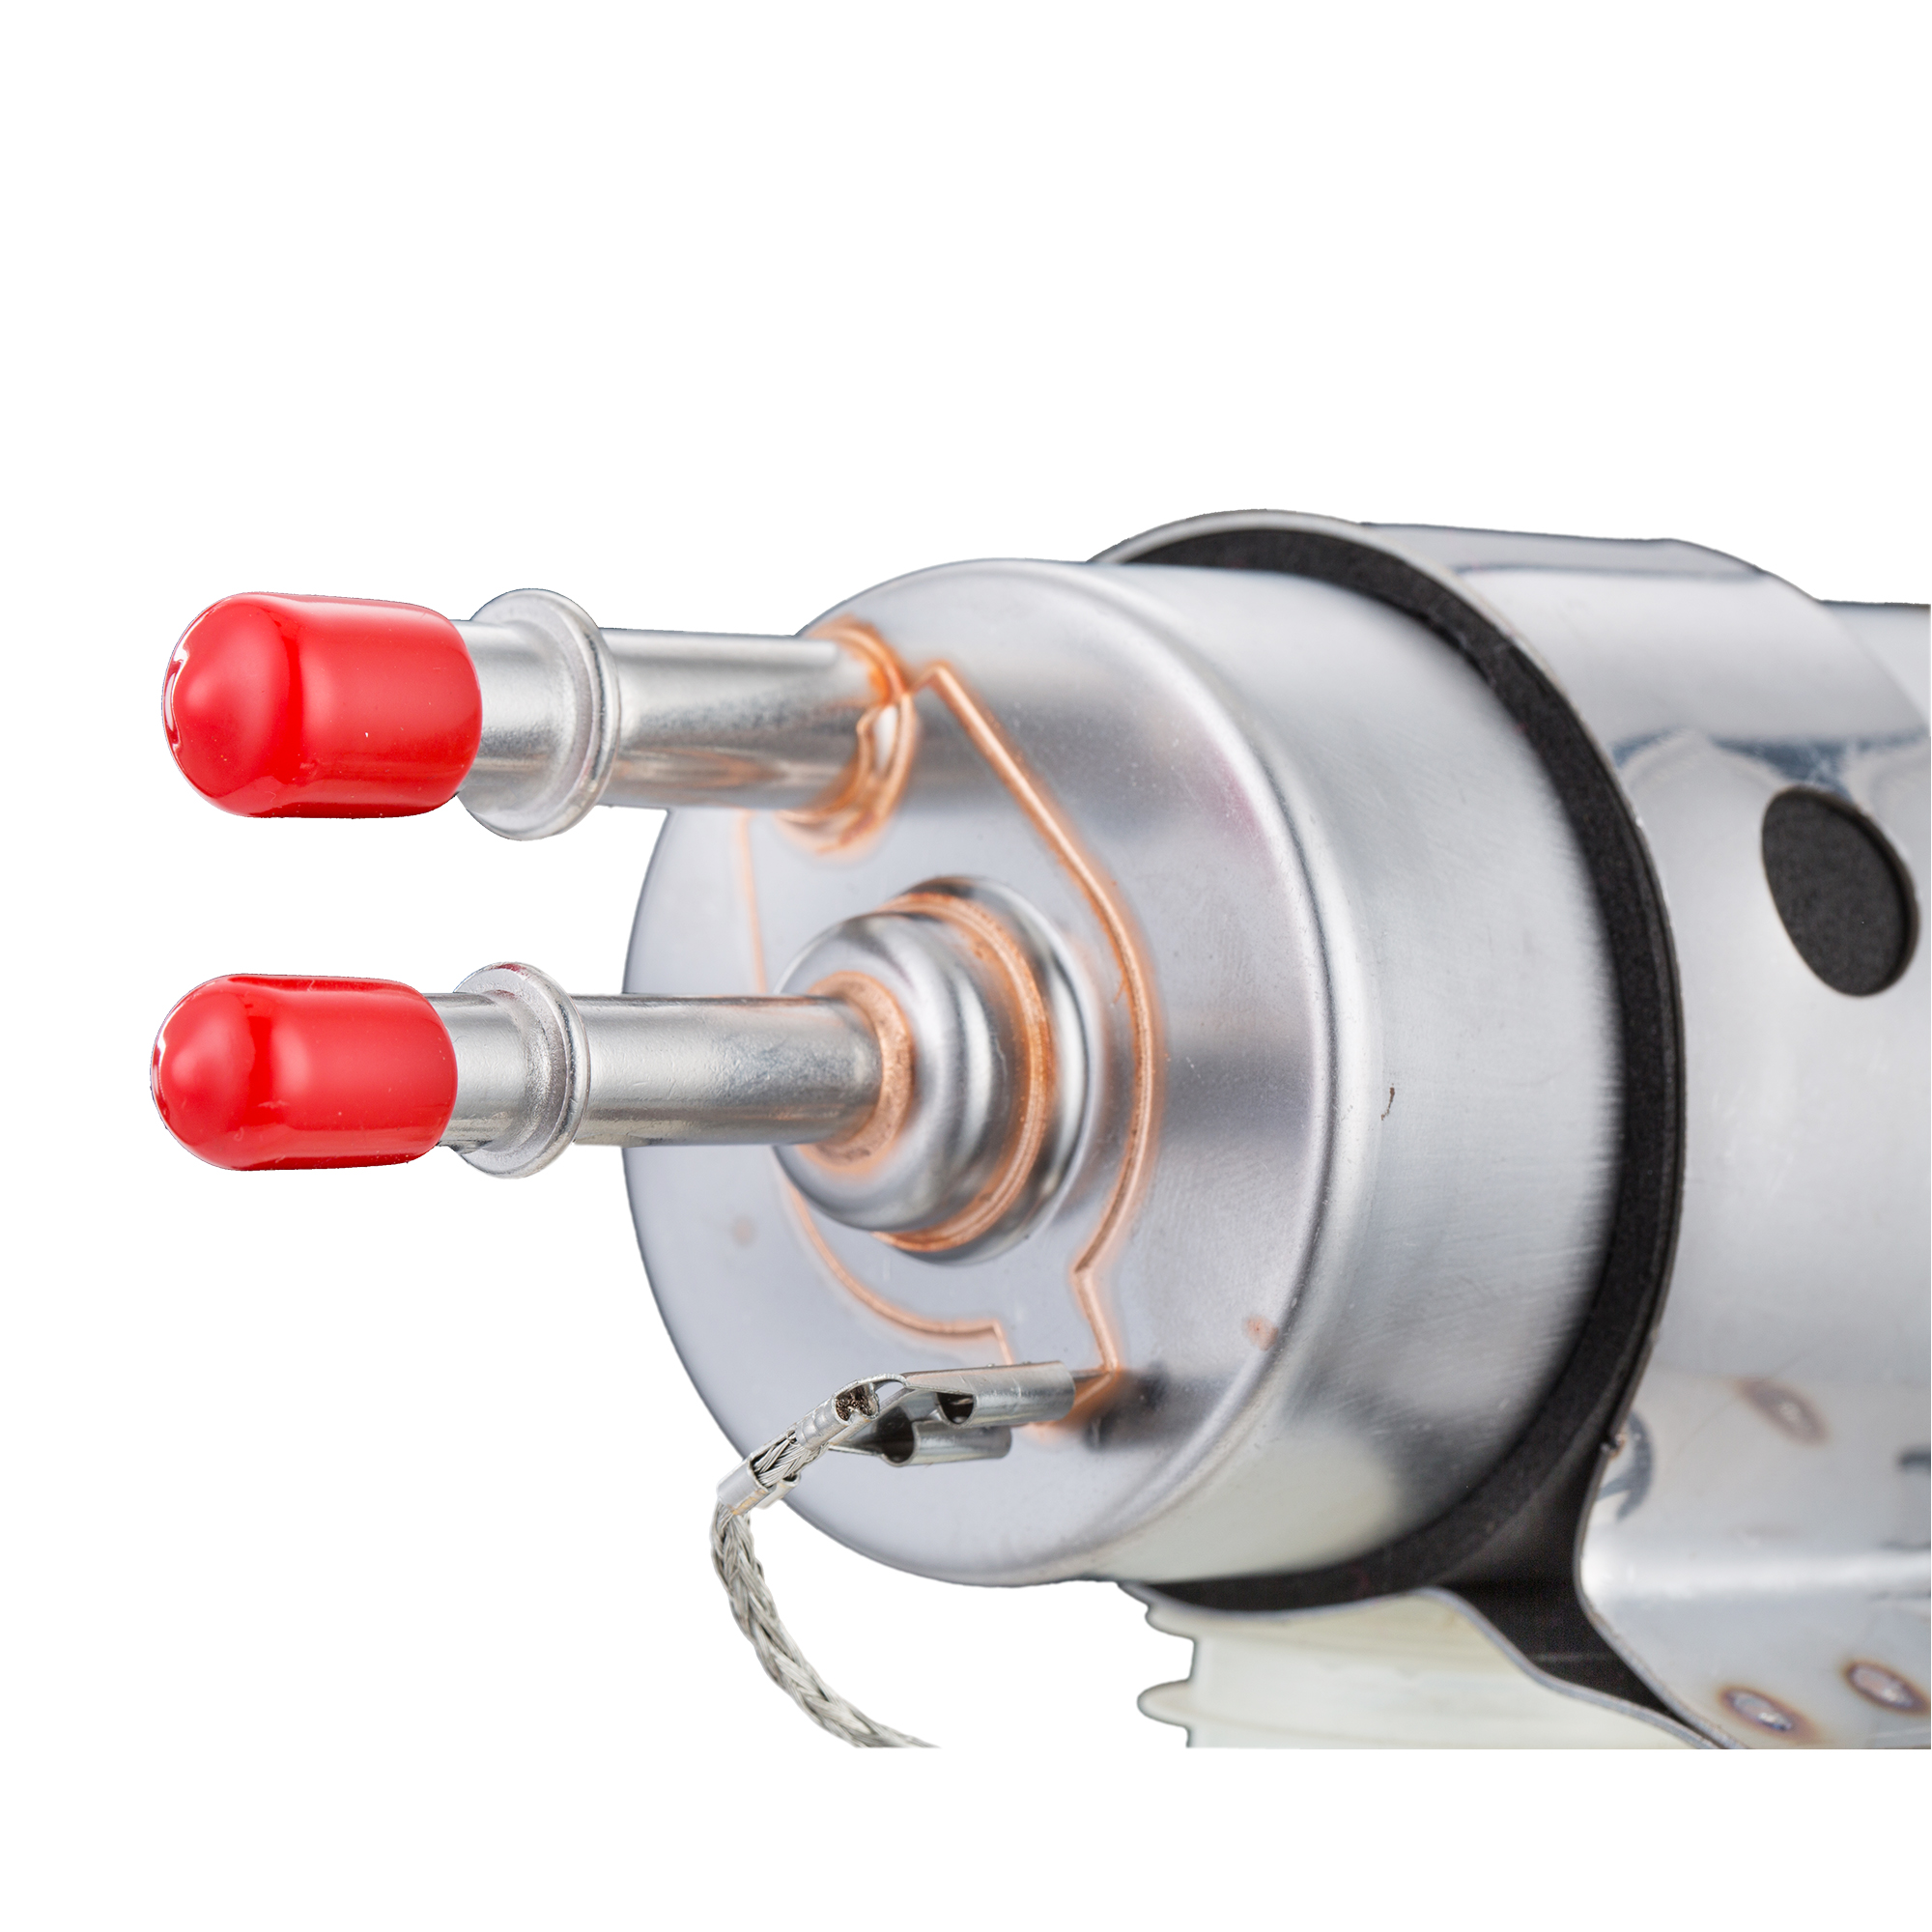 用于 EFI 转换或 LS 发动机的 HaoFa 燃油压力调节器发动机机油/燃油过滤器套装